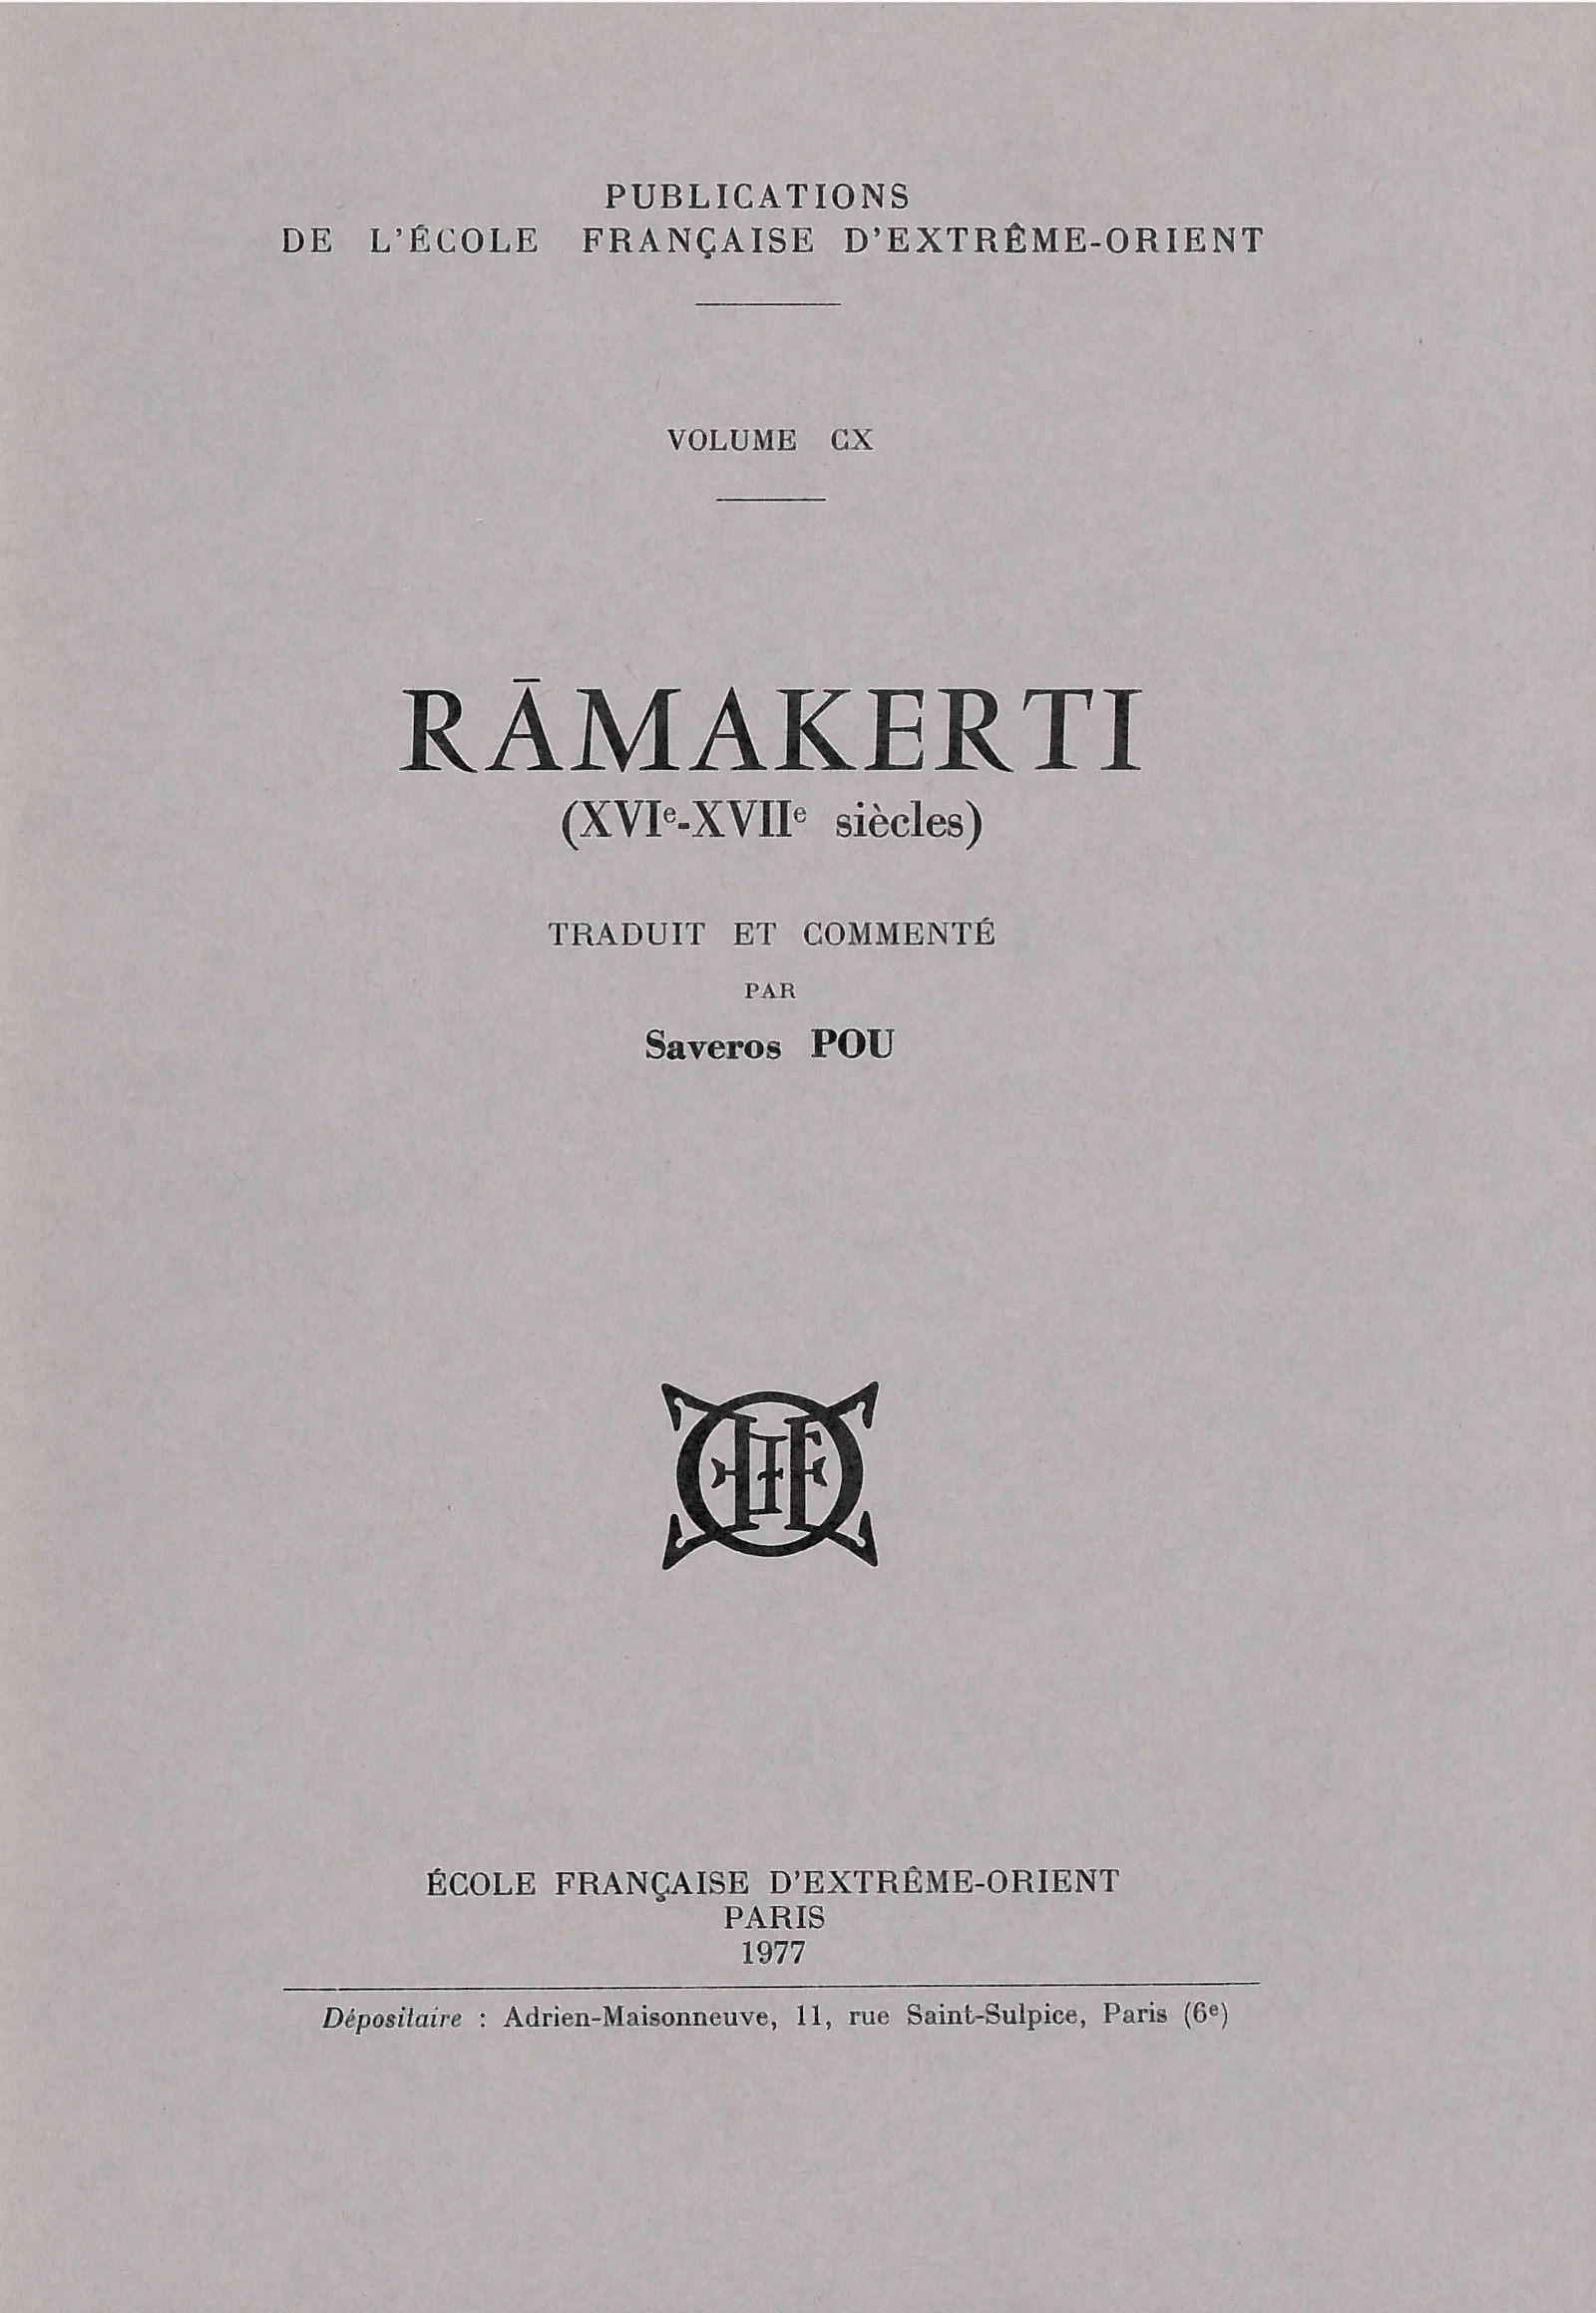 Rāmakerti (XVIe-XVIIe siècles)